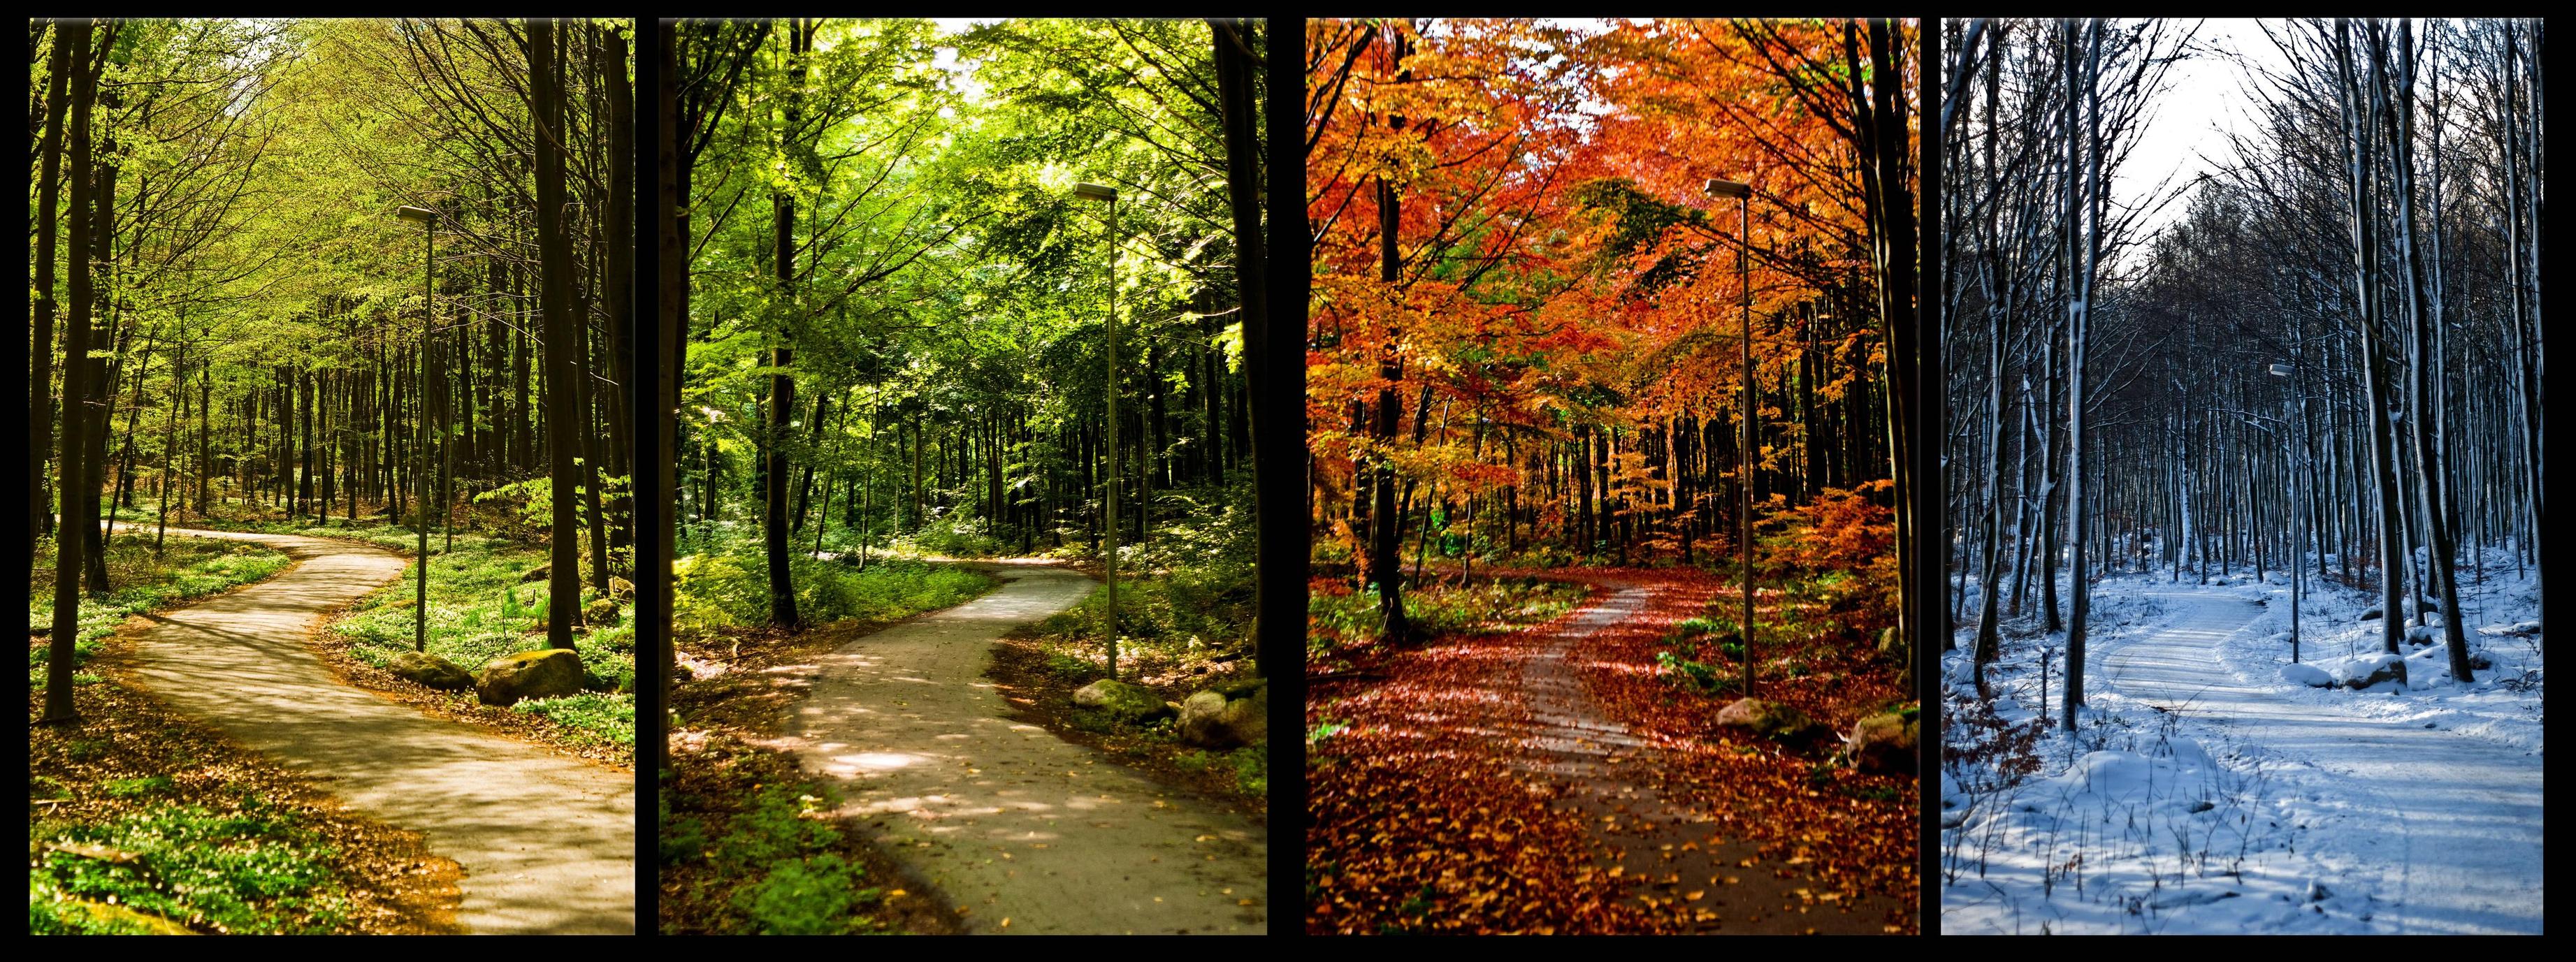 sentiero nelle quattro stagioni, alberi, foglie.